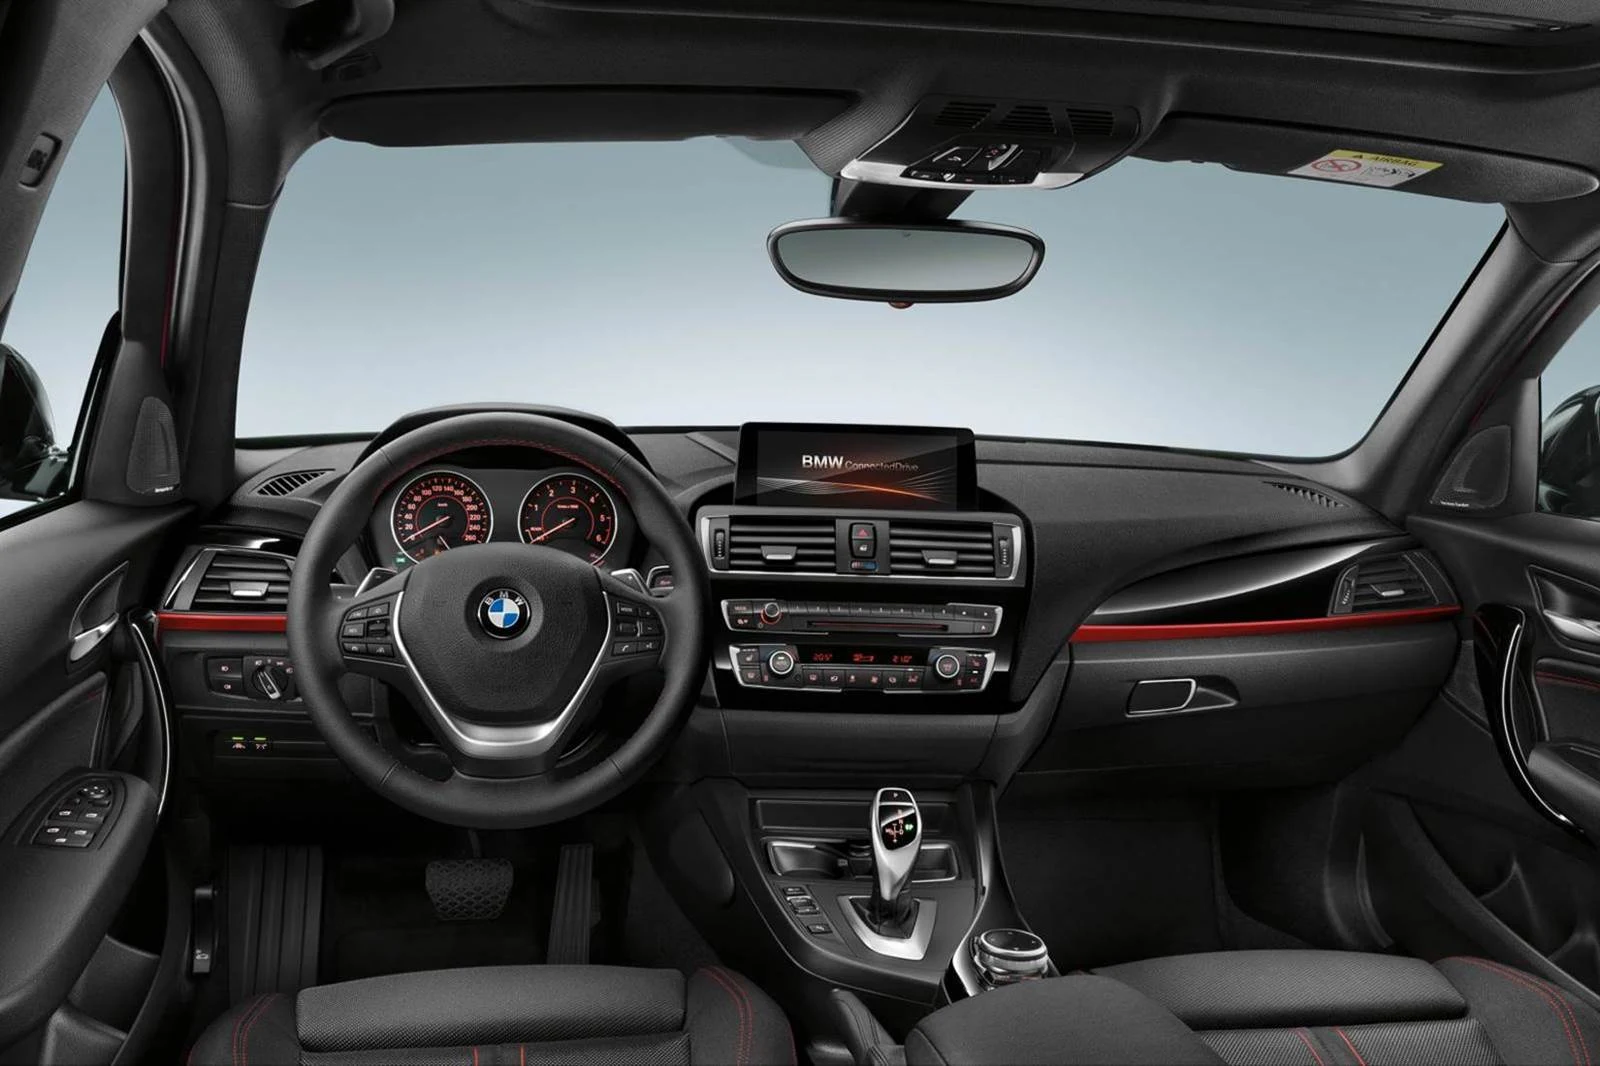 Novo BMW Série 1 2016 - interior